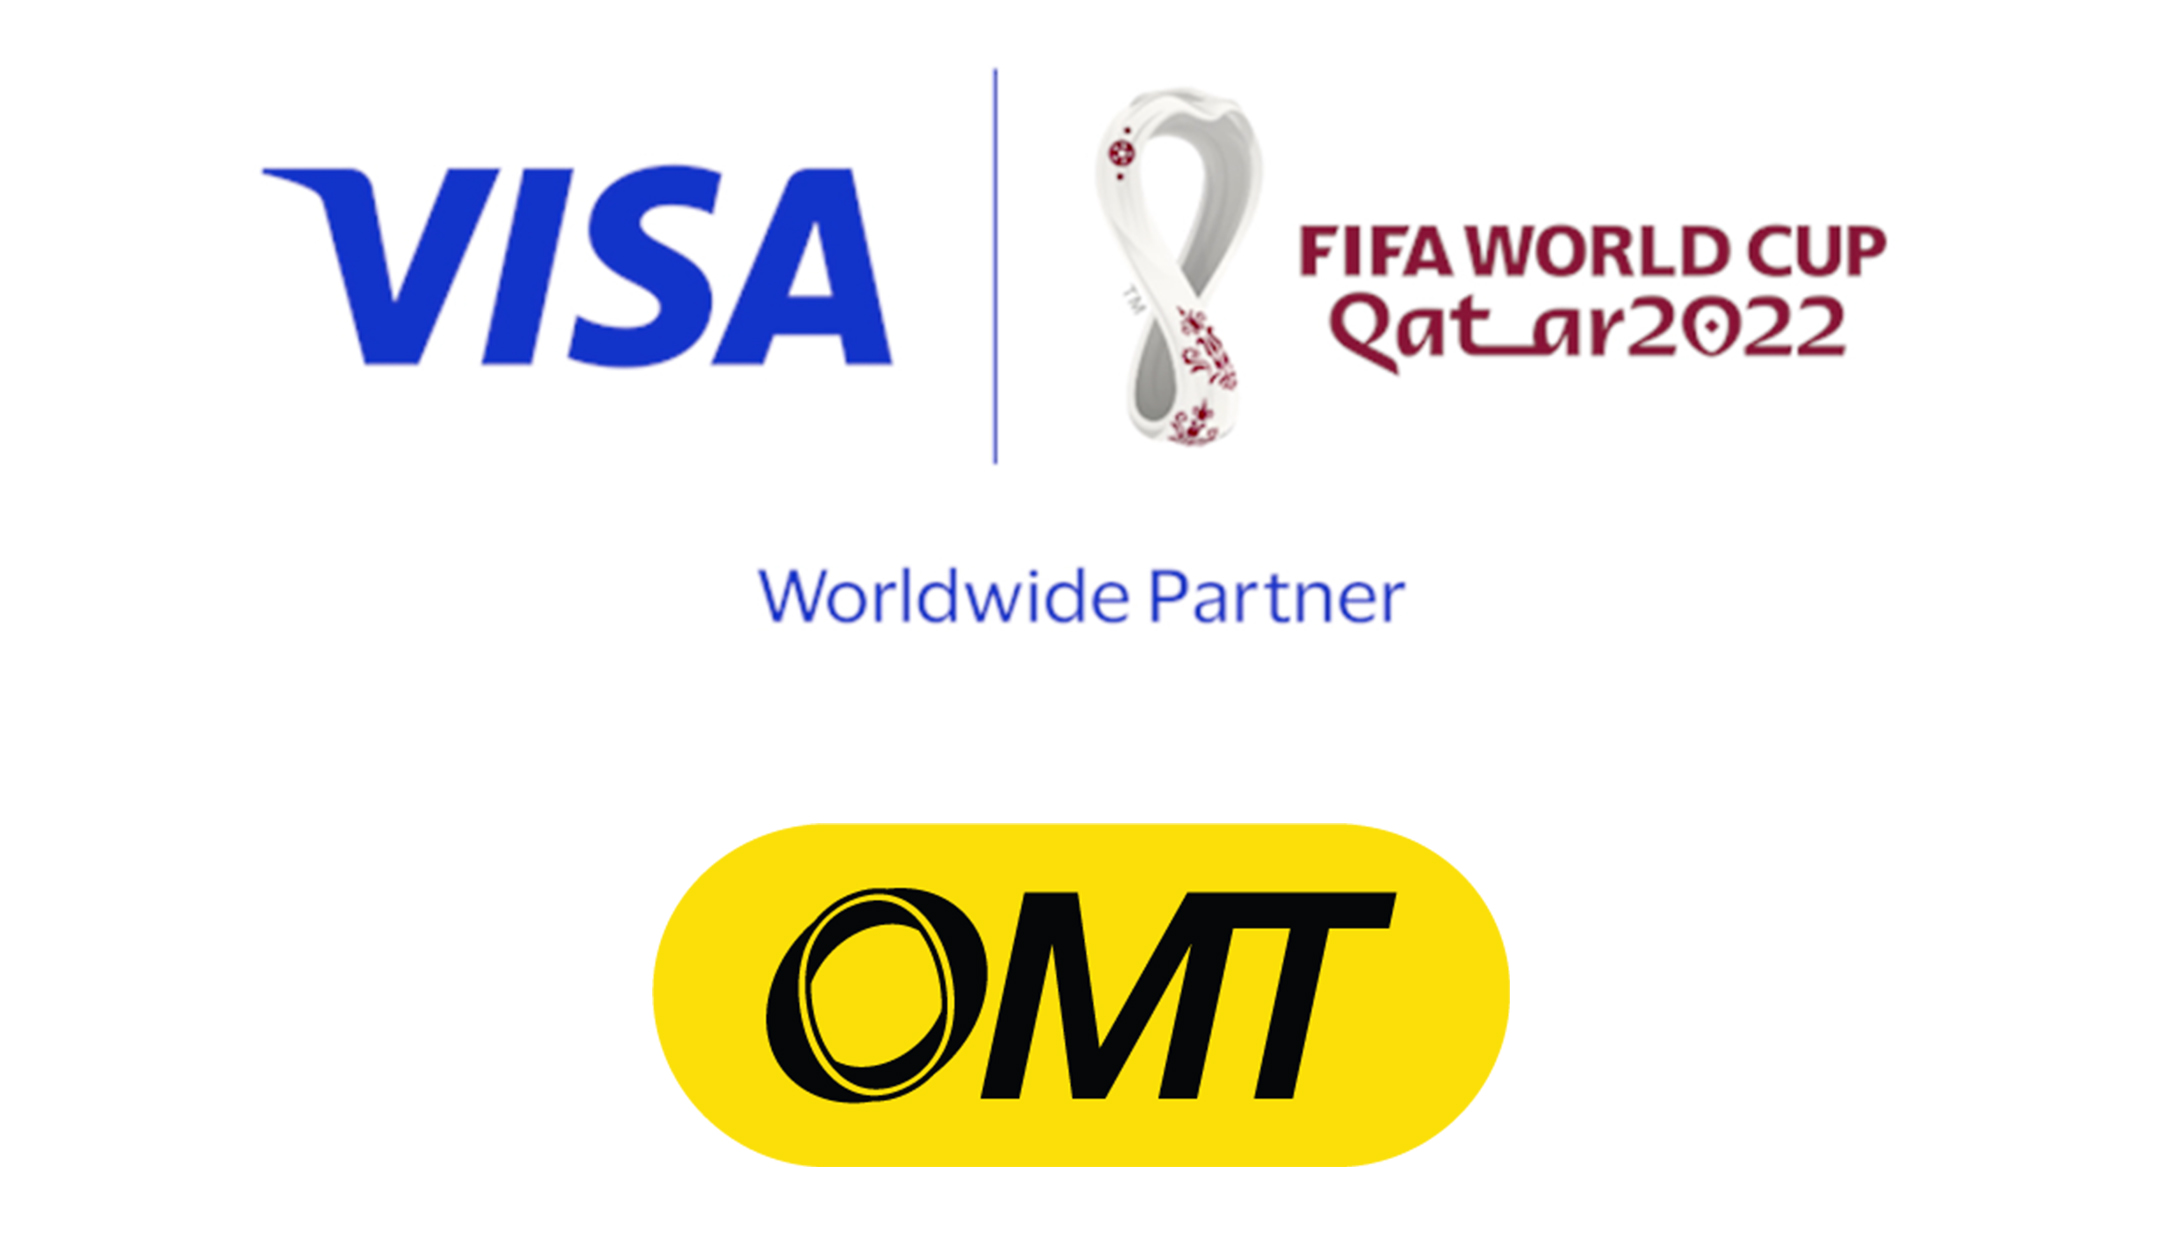 لعبها صح وطير عكأس العالم FIFA™ مع بطاقة OMT من Visa!